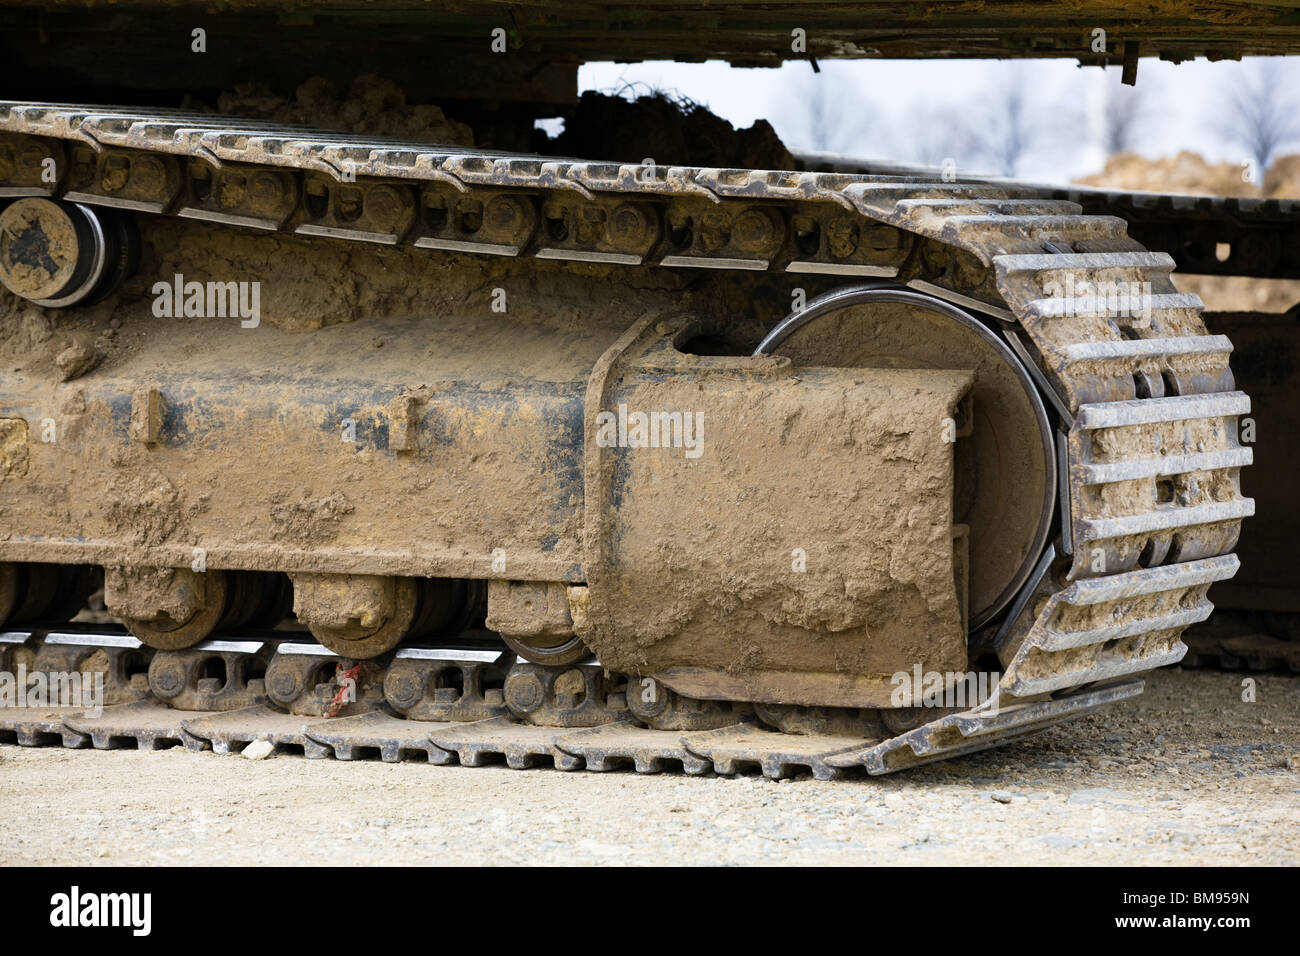 Ketten-Antrieb von einem Hydraulikbagger Caterpillar Stockfotografie - Alamy